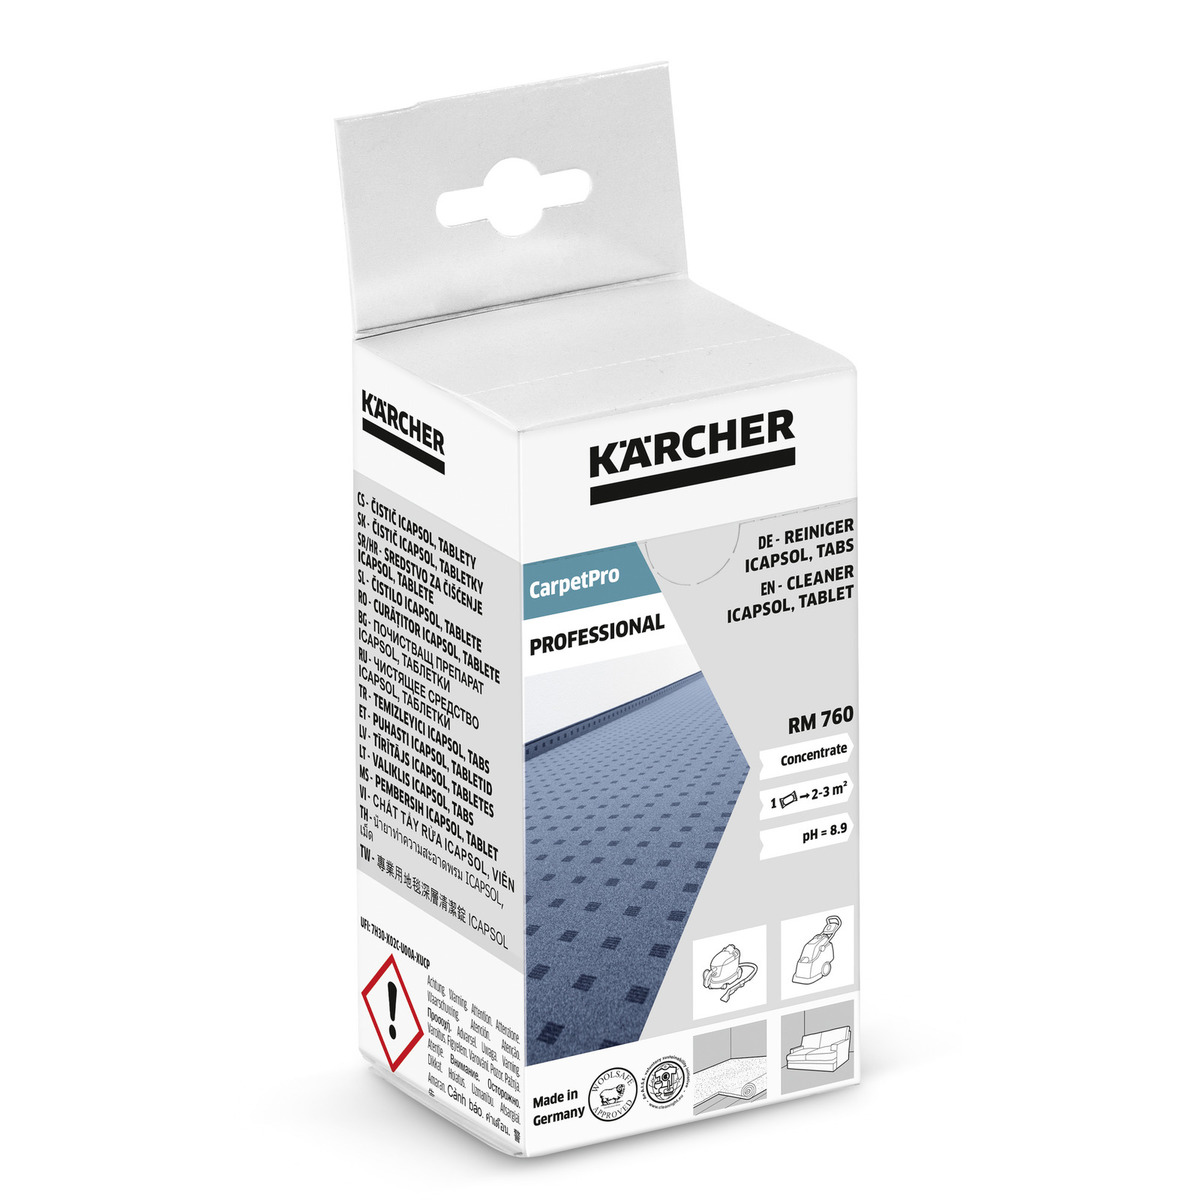 Karcher RM760 Carpet Cleaner